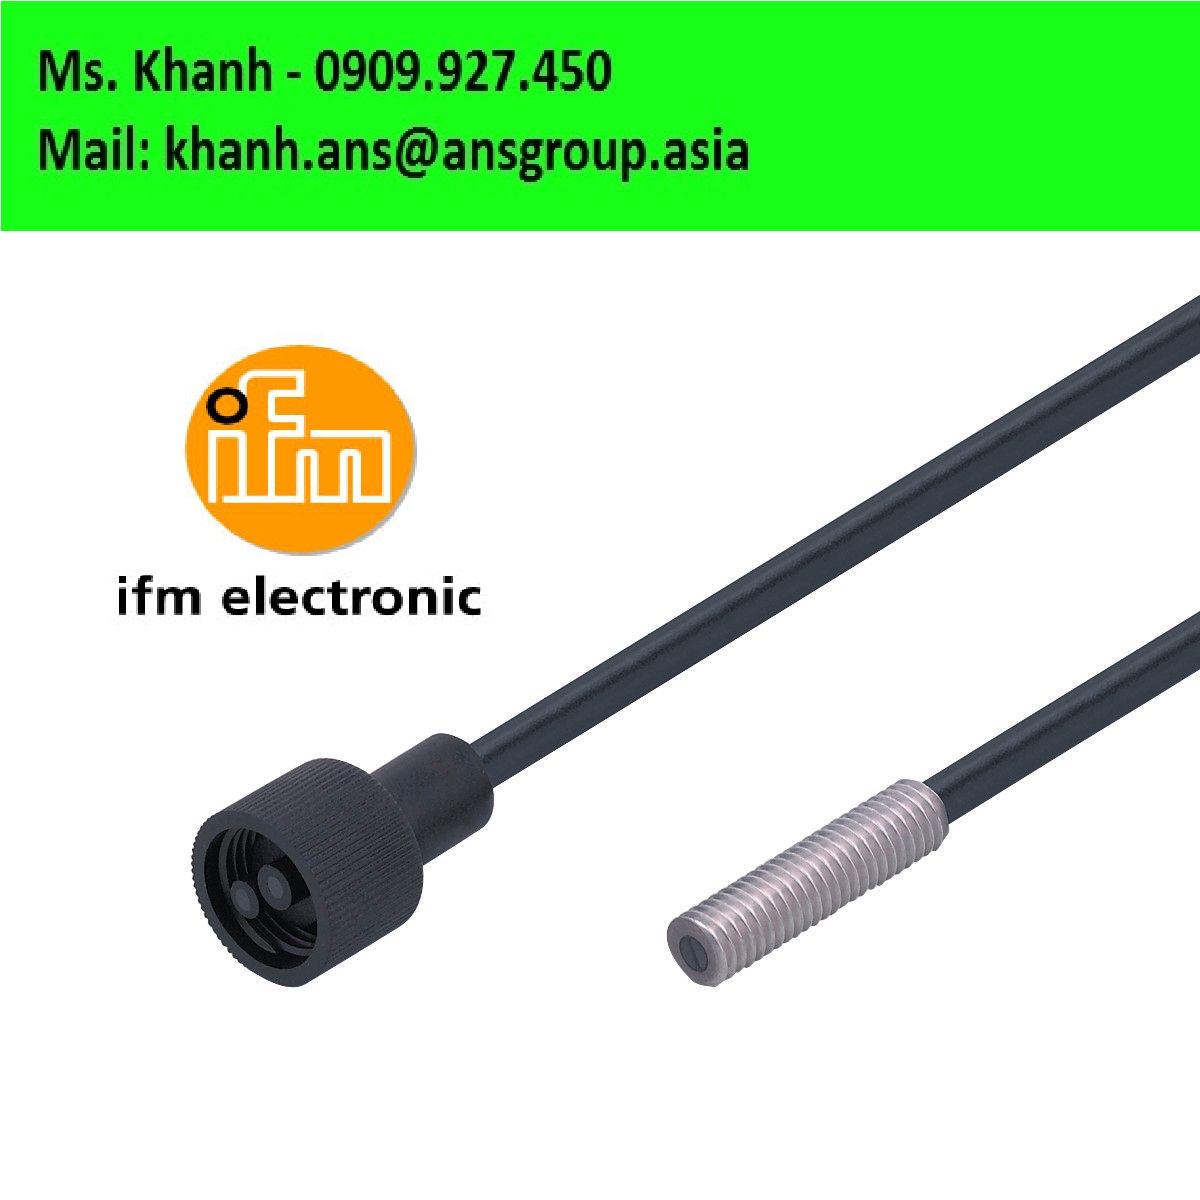 e20051-fiber-optics-ifm.png